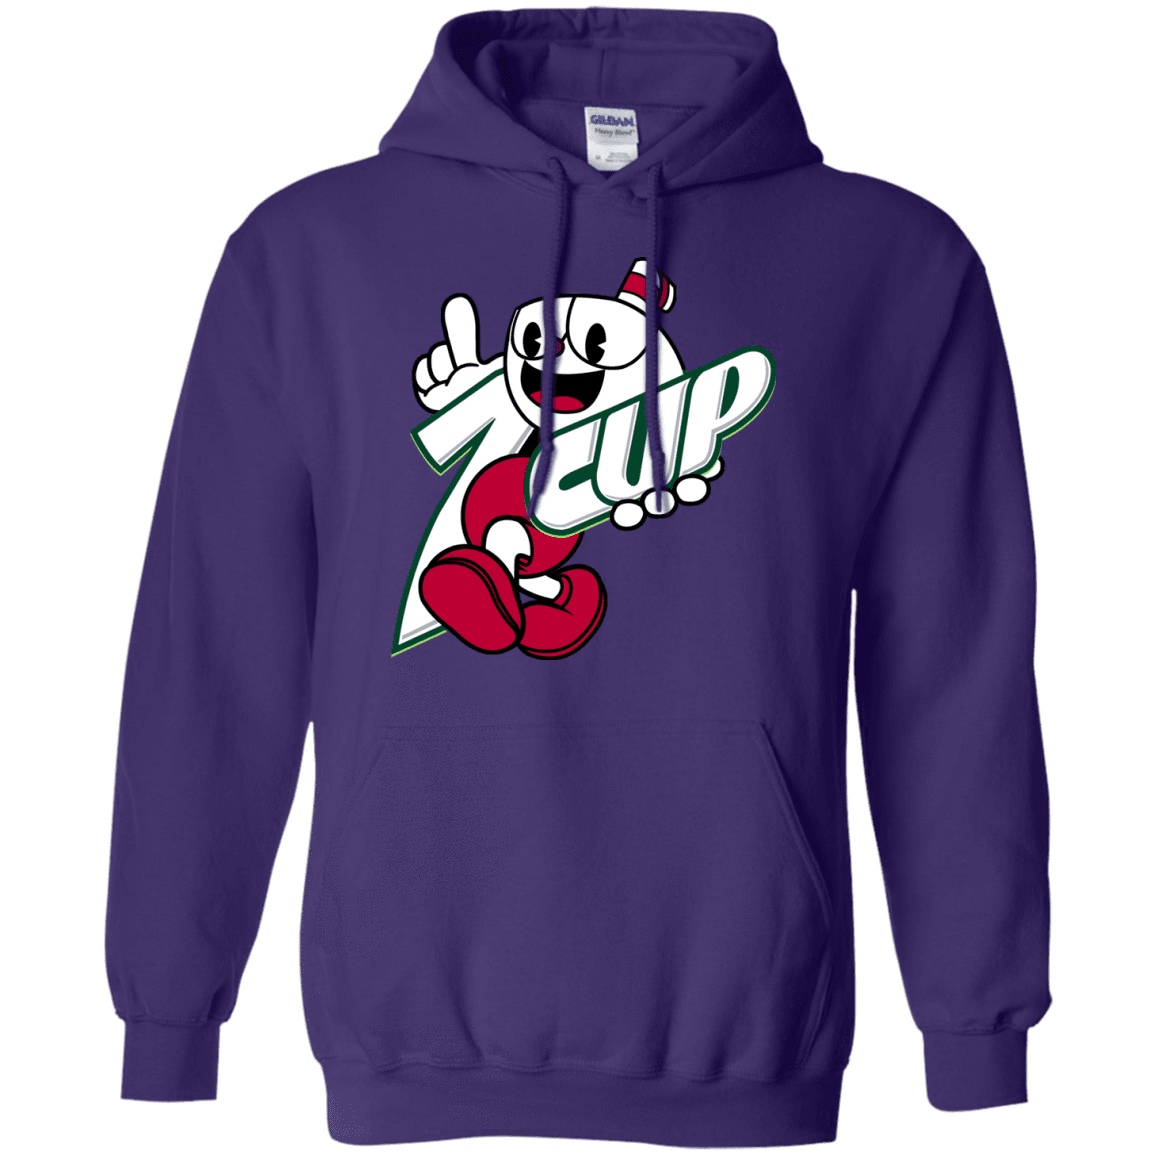 Sweatshirts Purple / S 1cup Pullover Hoodie